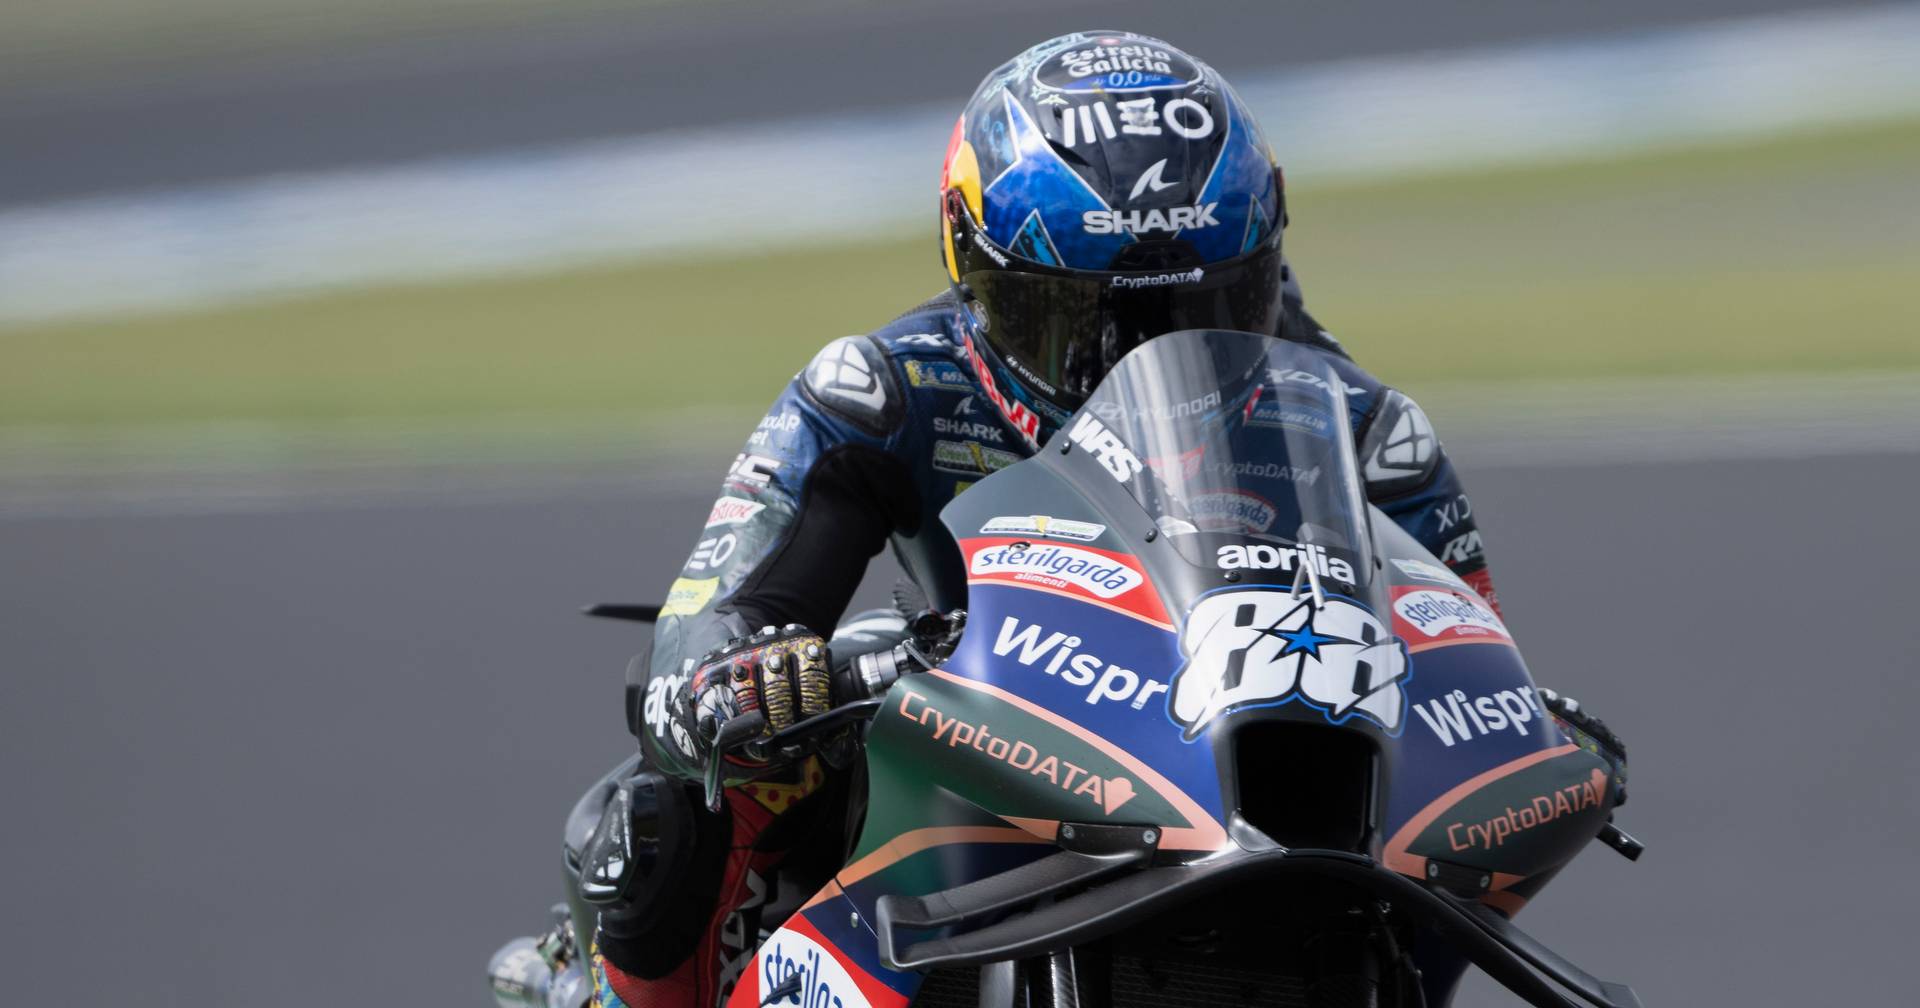 MotoGP: vento intenso obriga ao cancelamento da corrida sprint do GP da  Austrália - SIC Notícias